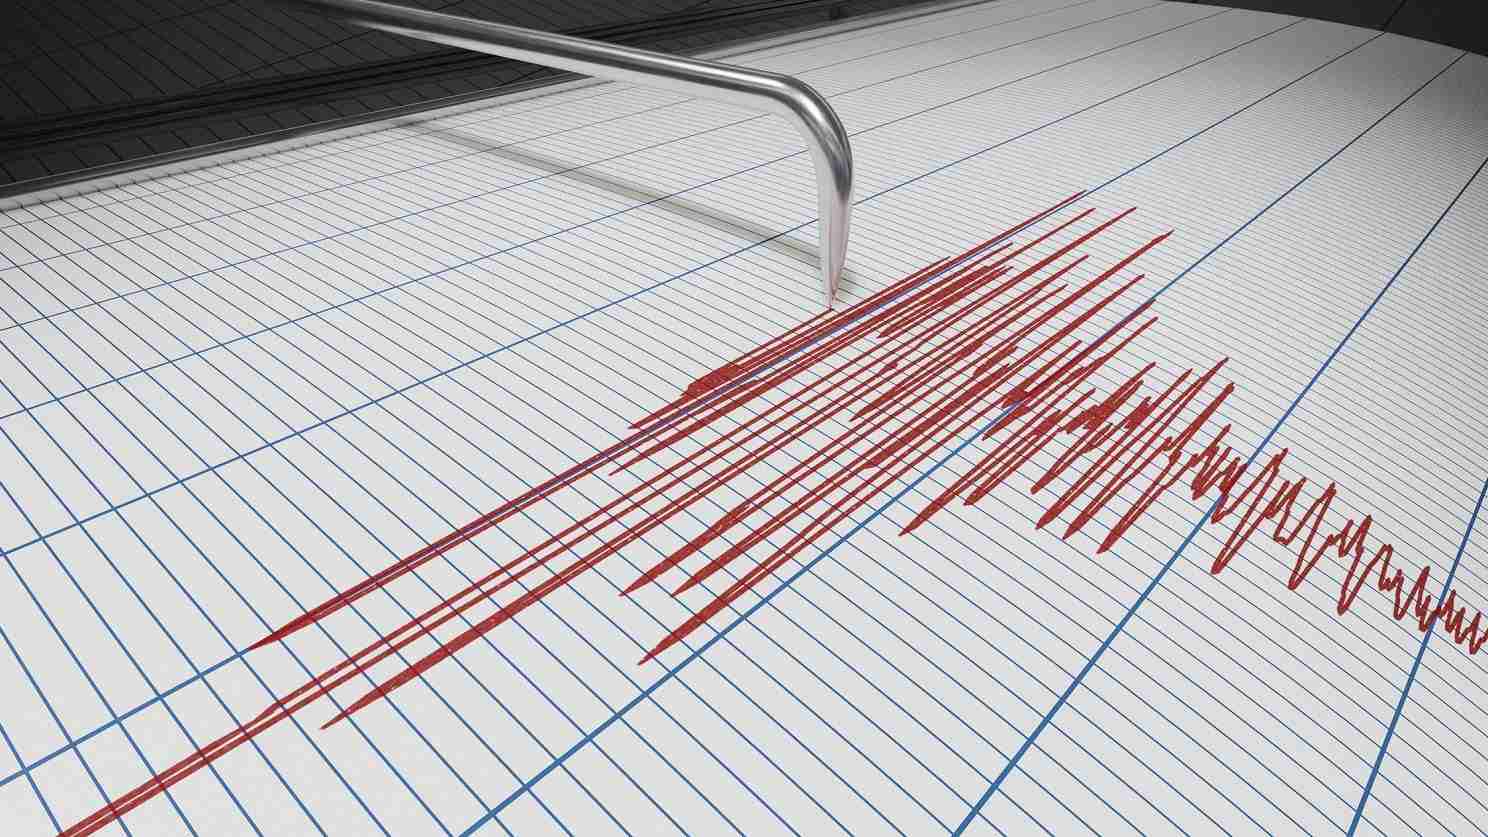 Scossa di terremoto di magnitudo 4.1 nel Catanese